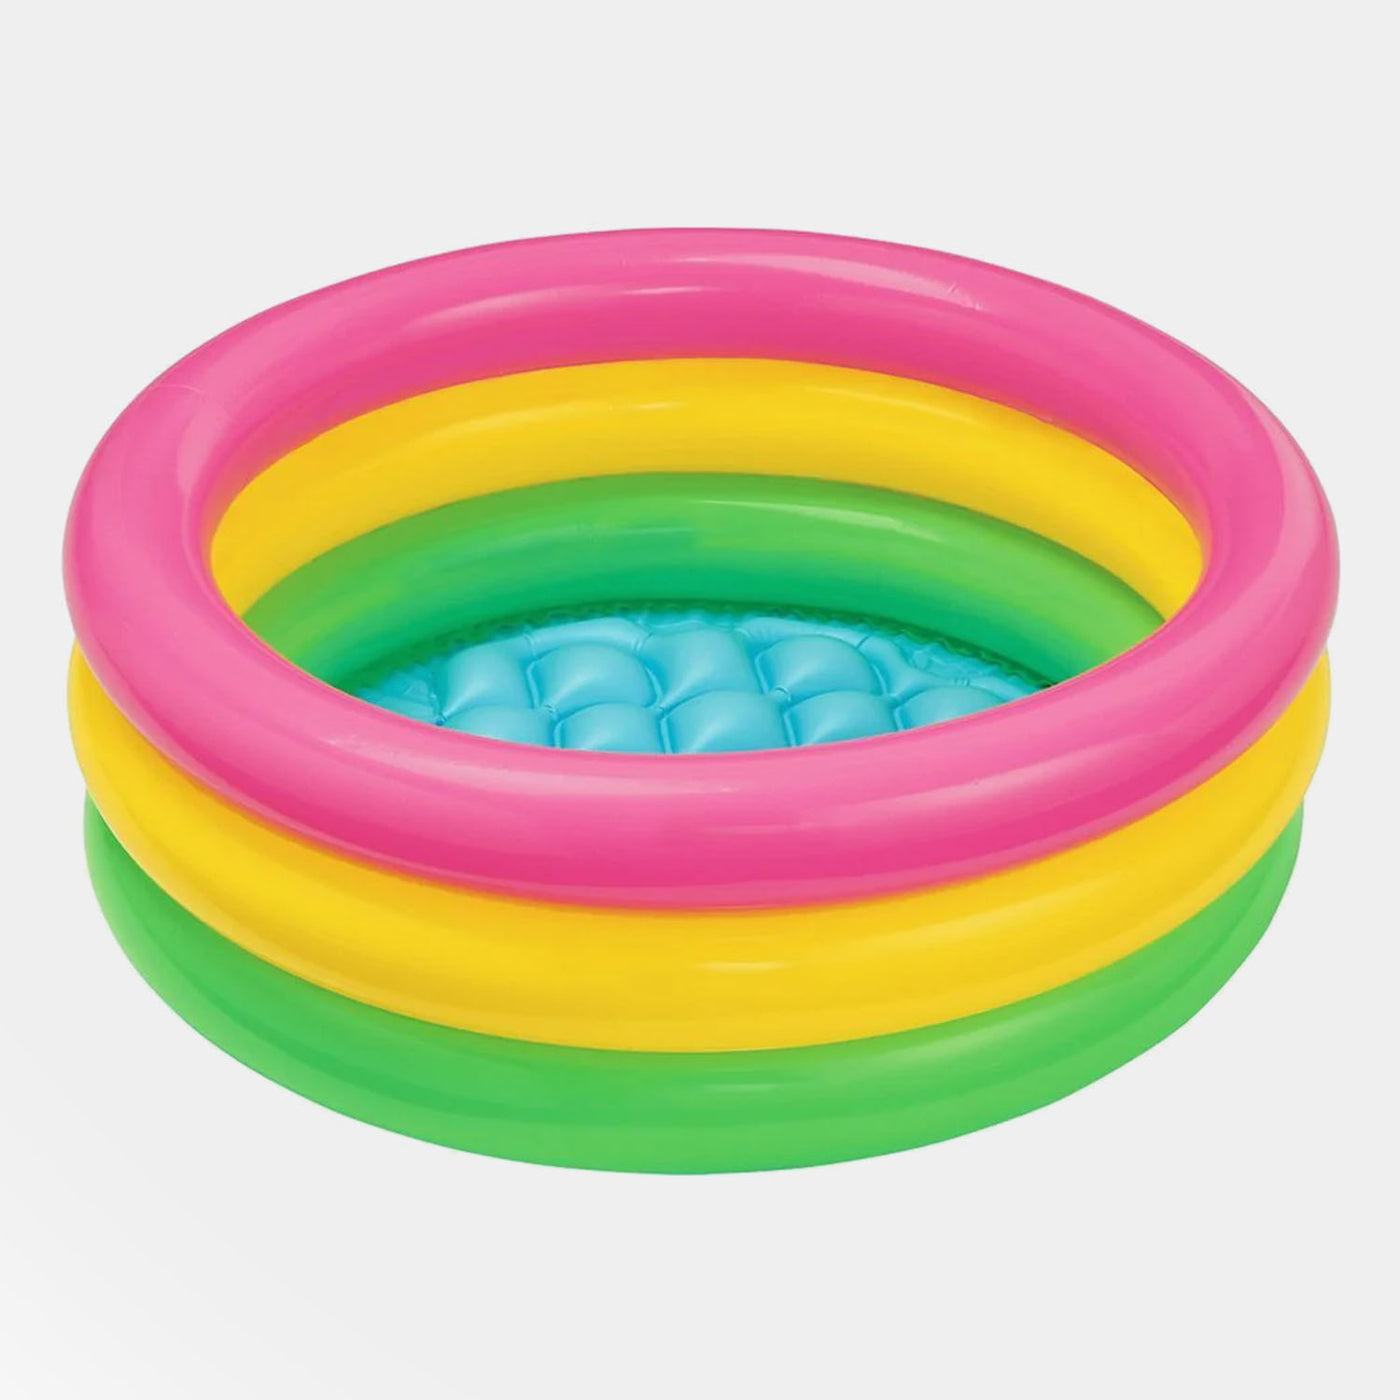 Intex 3-Ring Baby Play Pool